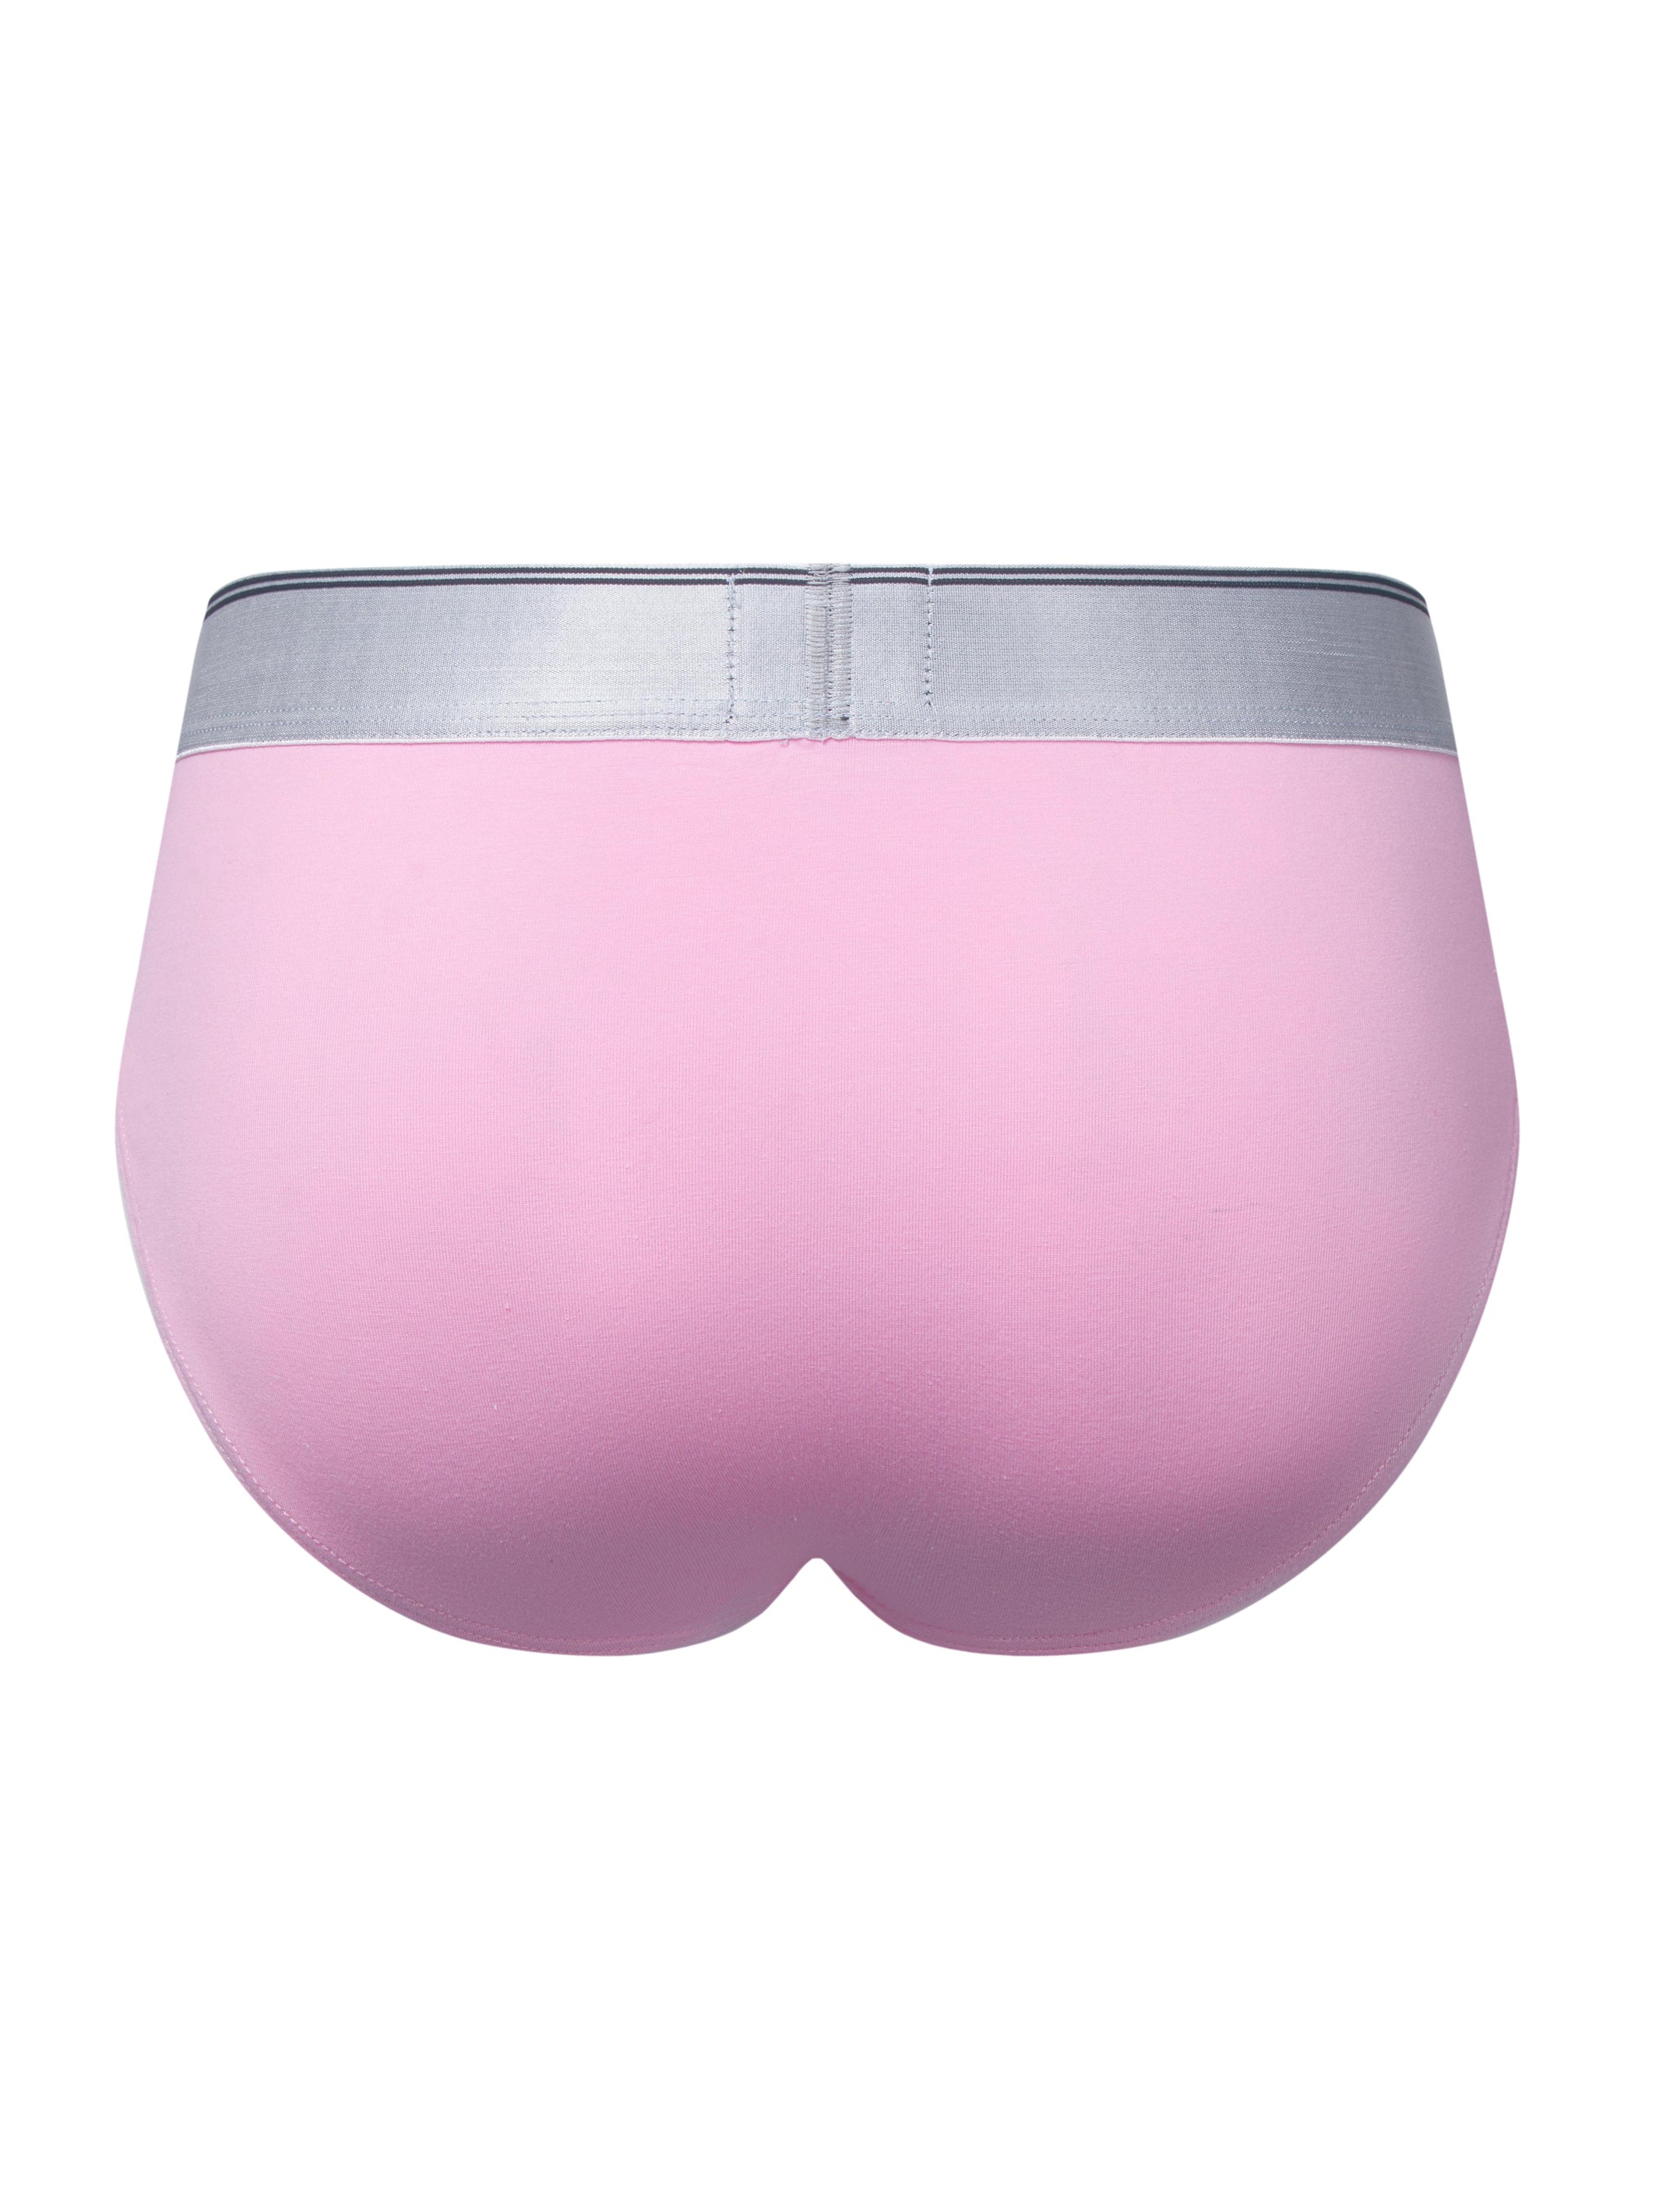 Y2K Briefs (Pink), Men's Underwear